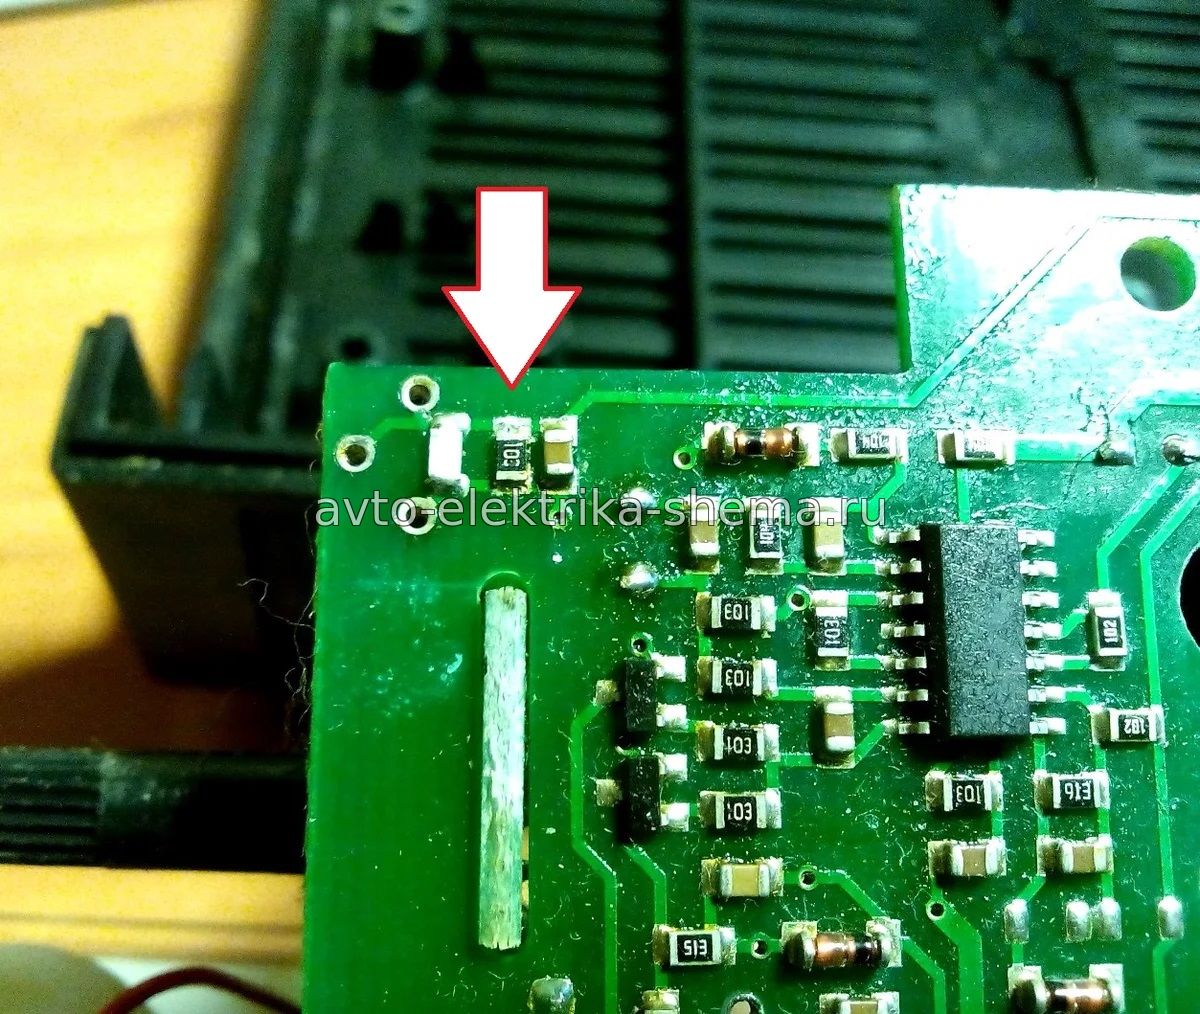 нужно удалить резистор, который заменяет переменное сопротивление, но выставлен на максимальное значение